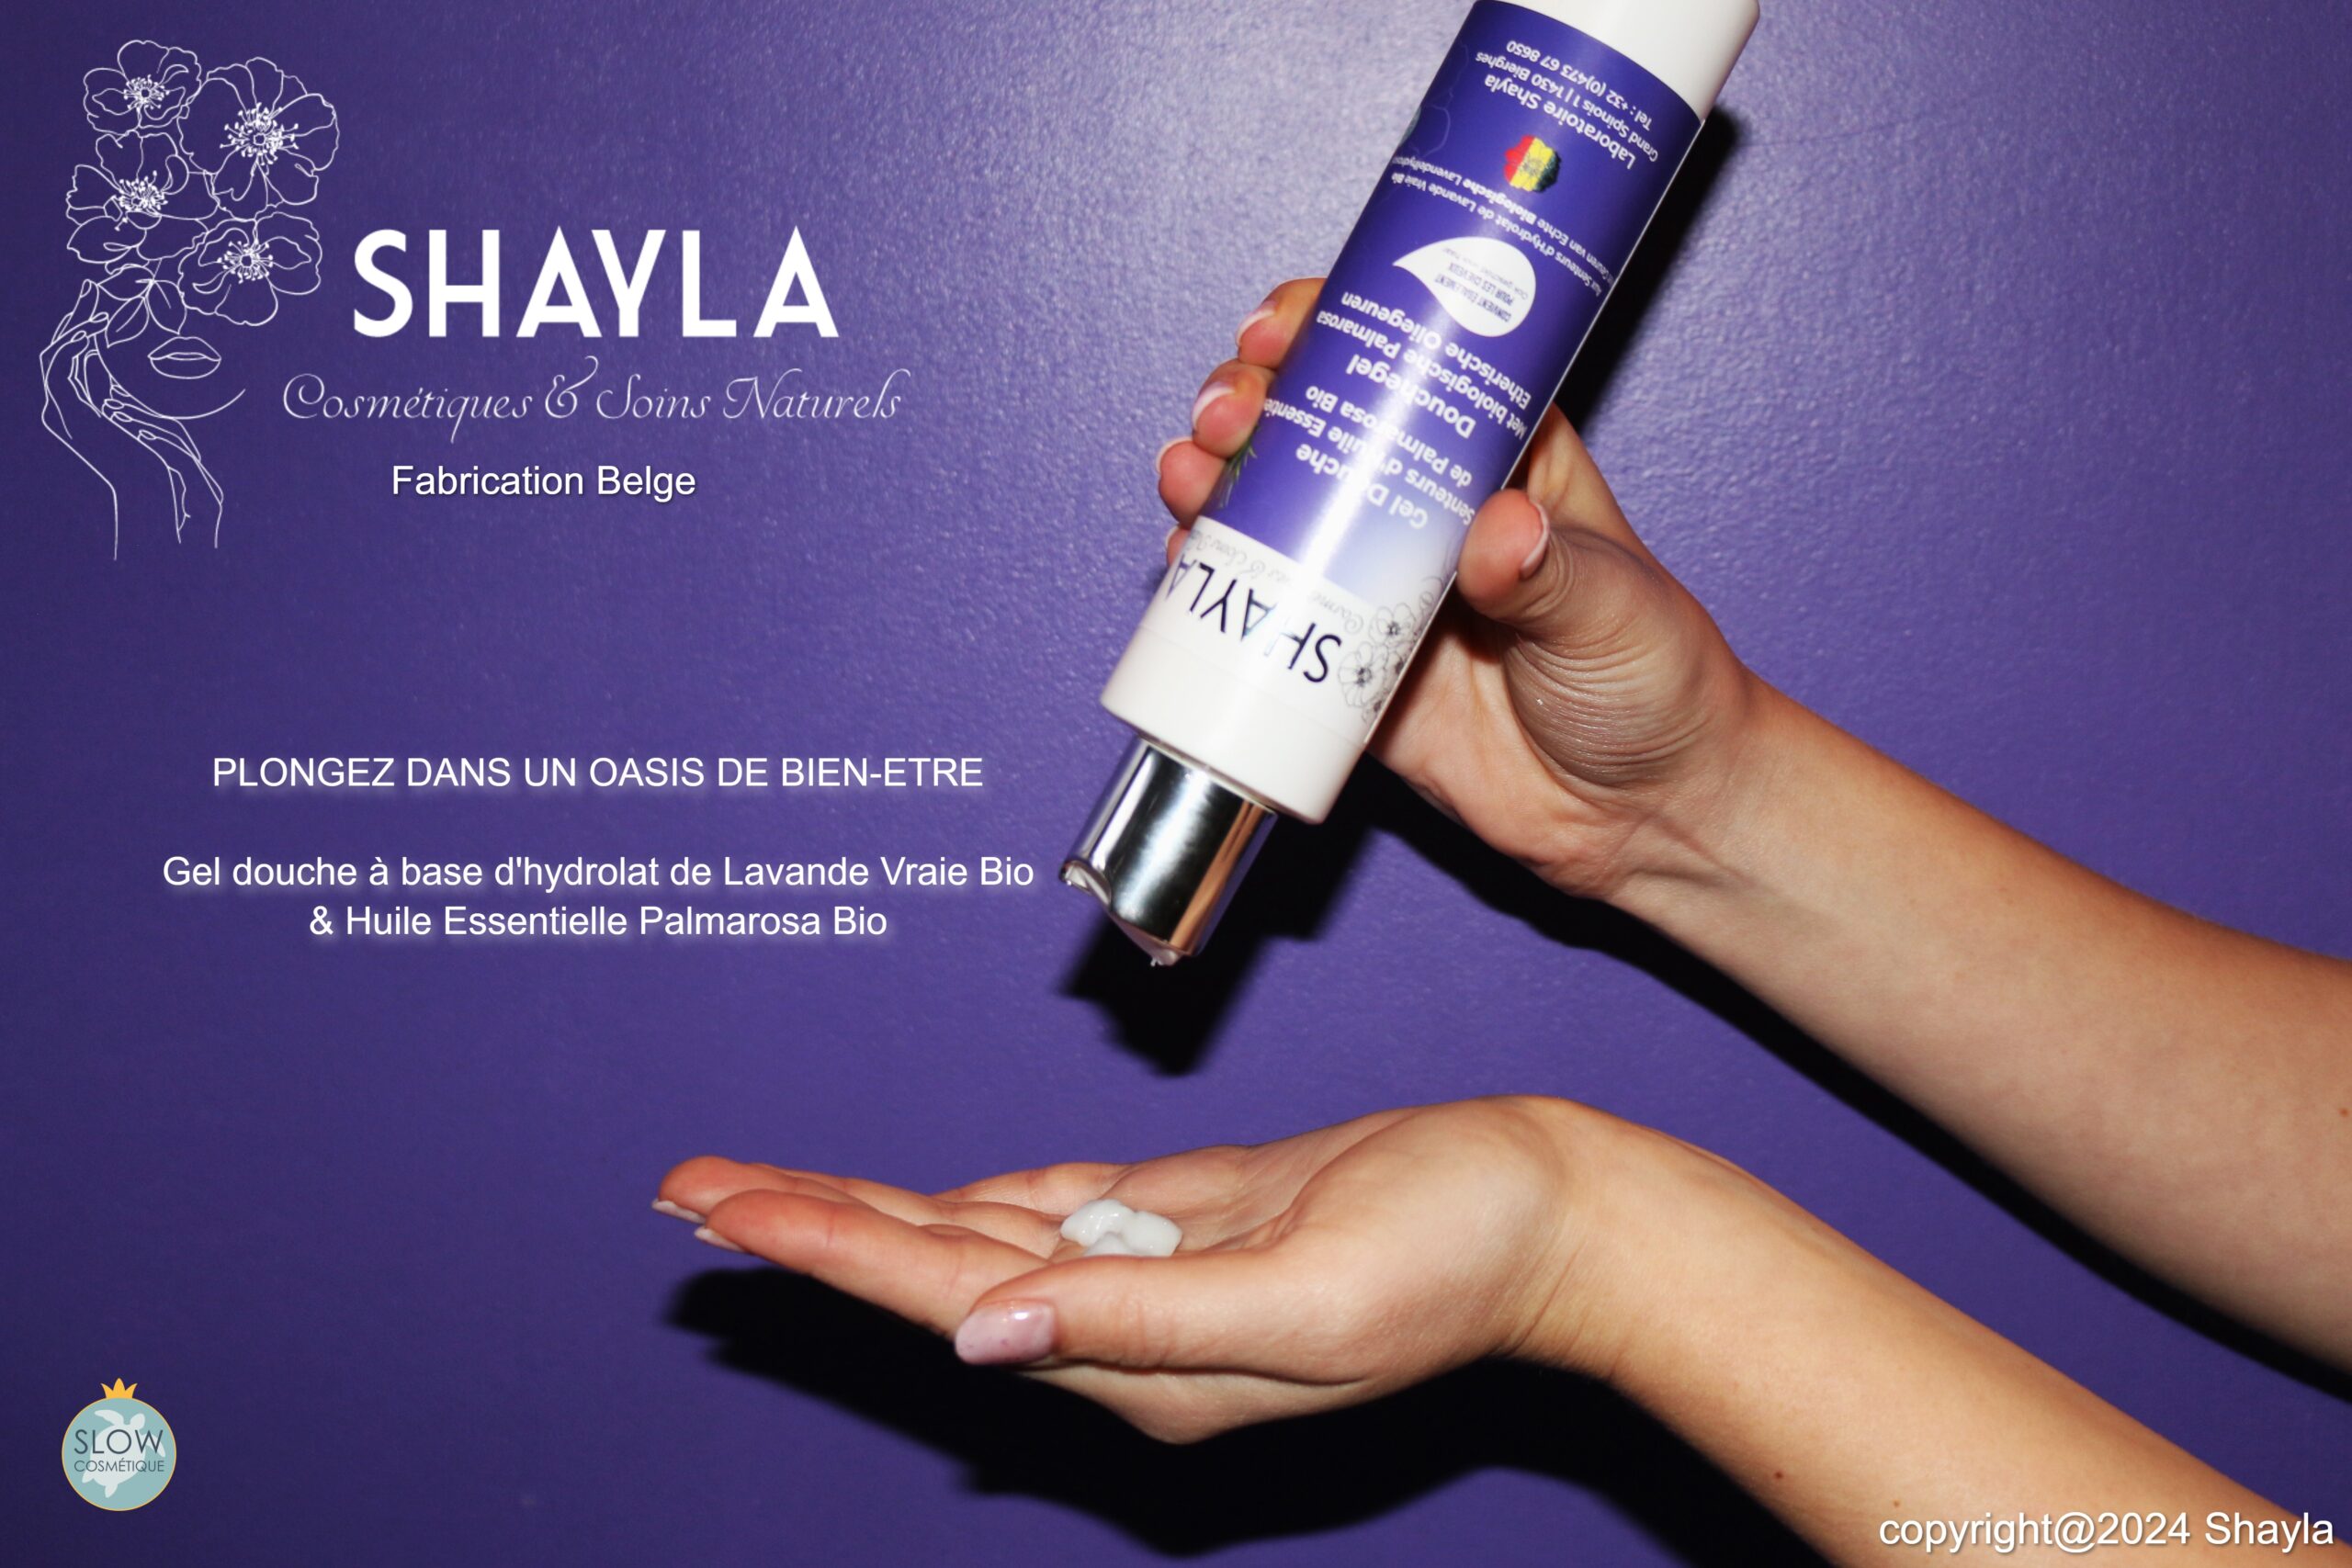 Shayla-cosmetiques-naturels-soin-corporelle-gel-douche-corps-et-cheveux-hydrolat-de-lavande-vraie-bio-belge-2-1-scaled.jpg